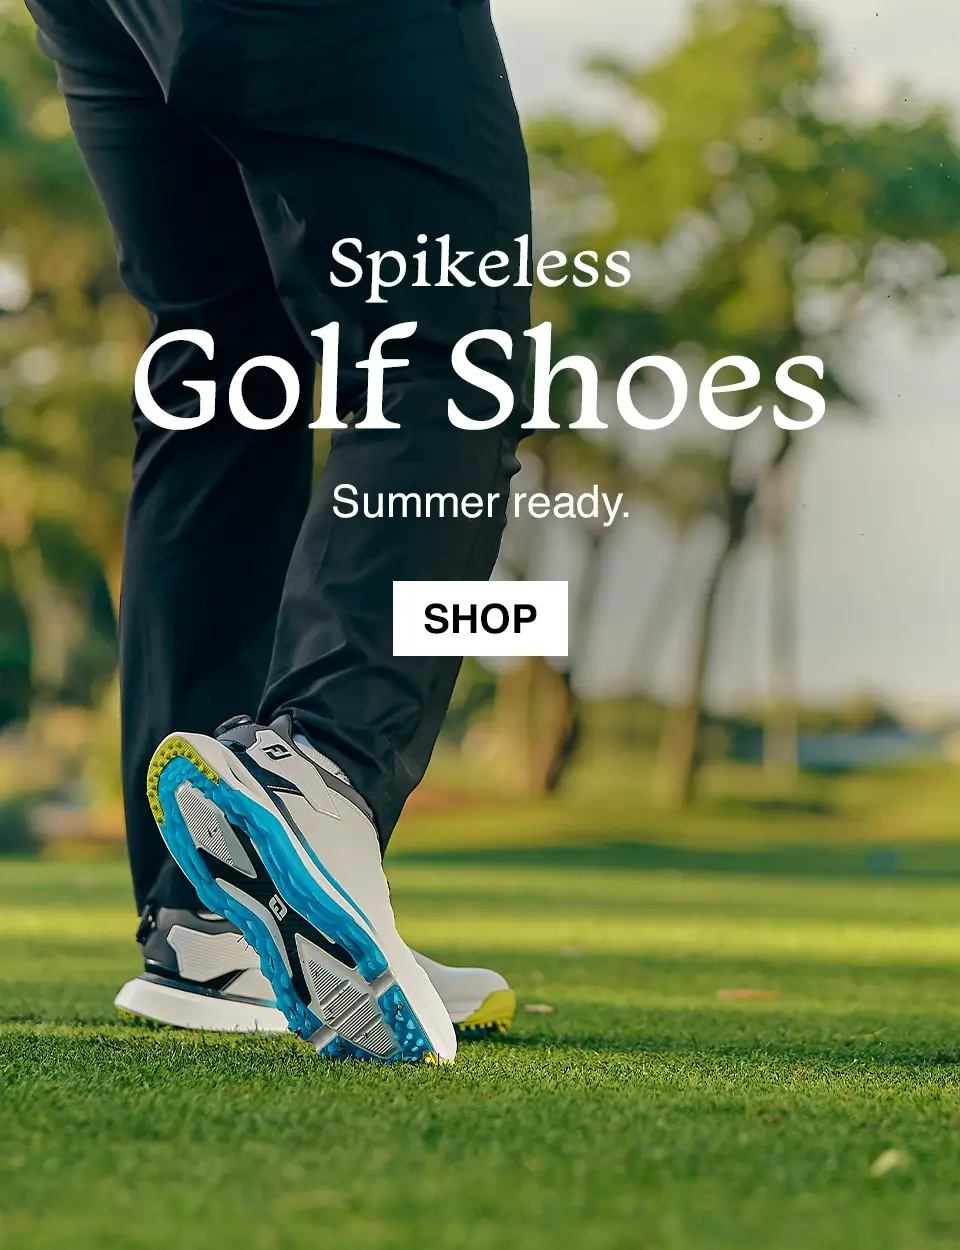 Spikeless Golf Shoes